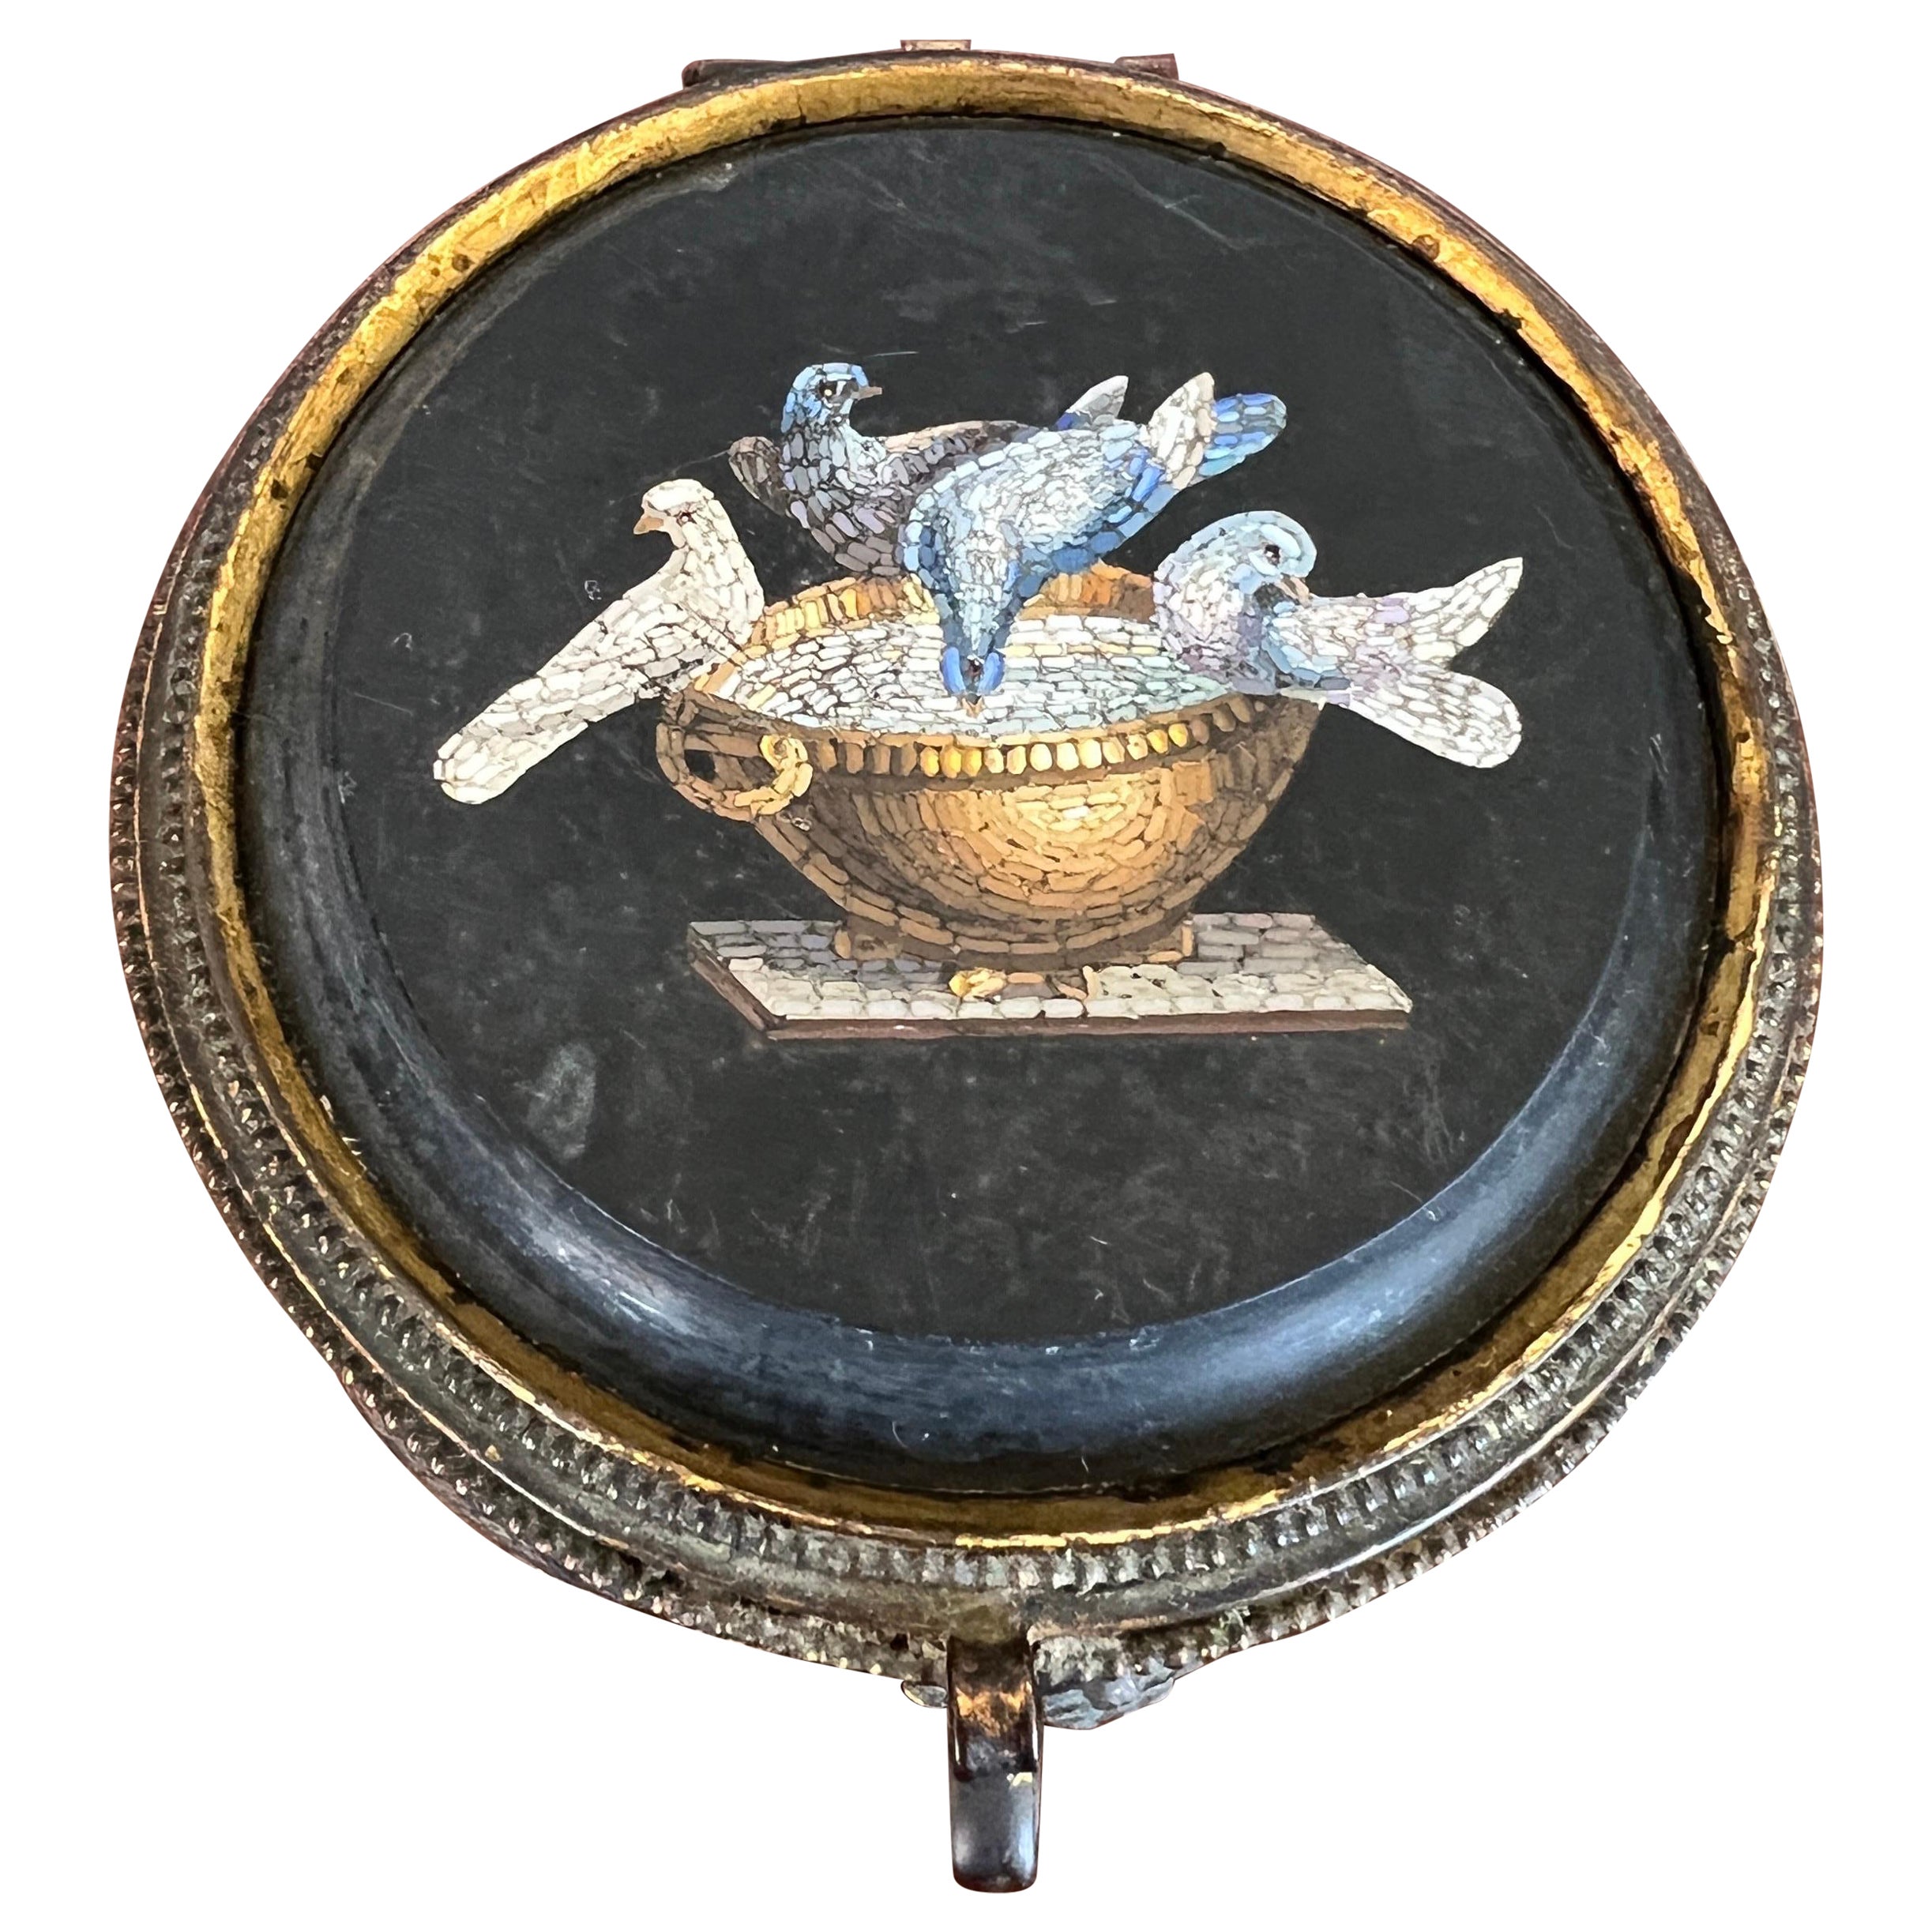 19. Jh. Italienische Grand Tour Mikro-Mosaik "Tauben des Plinius" Dose nach der Antike